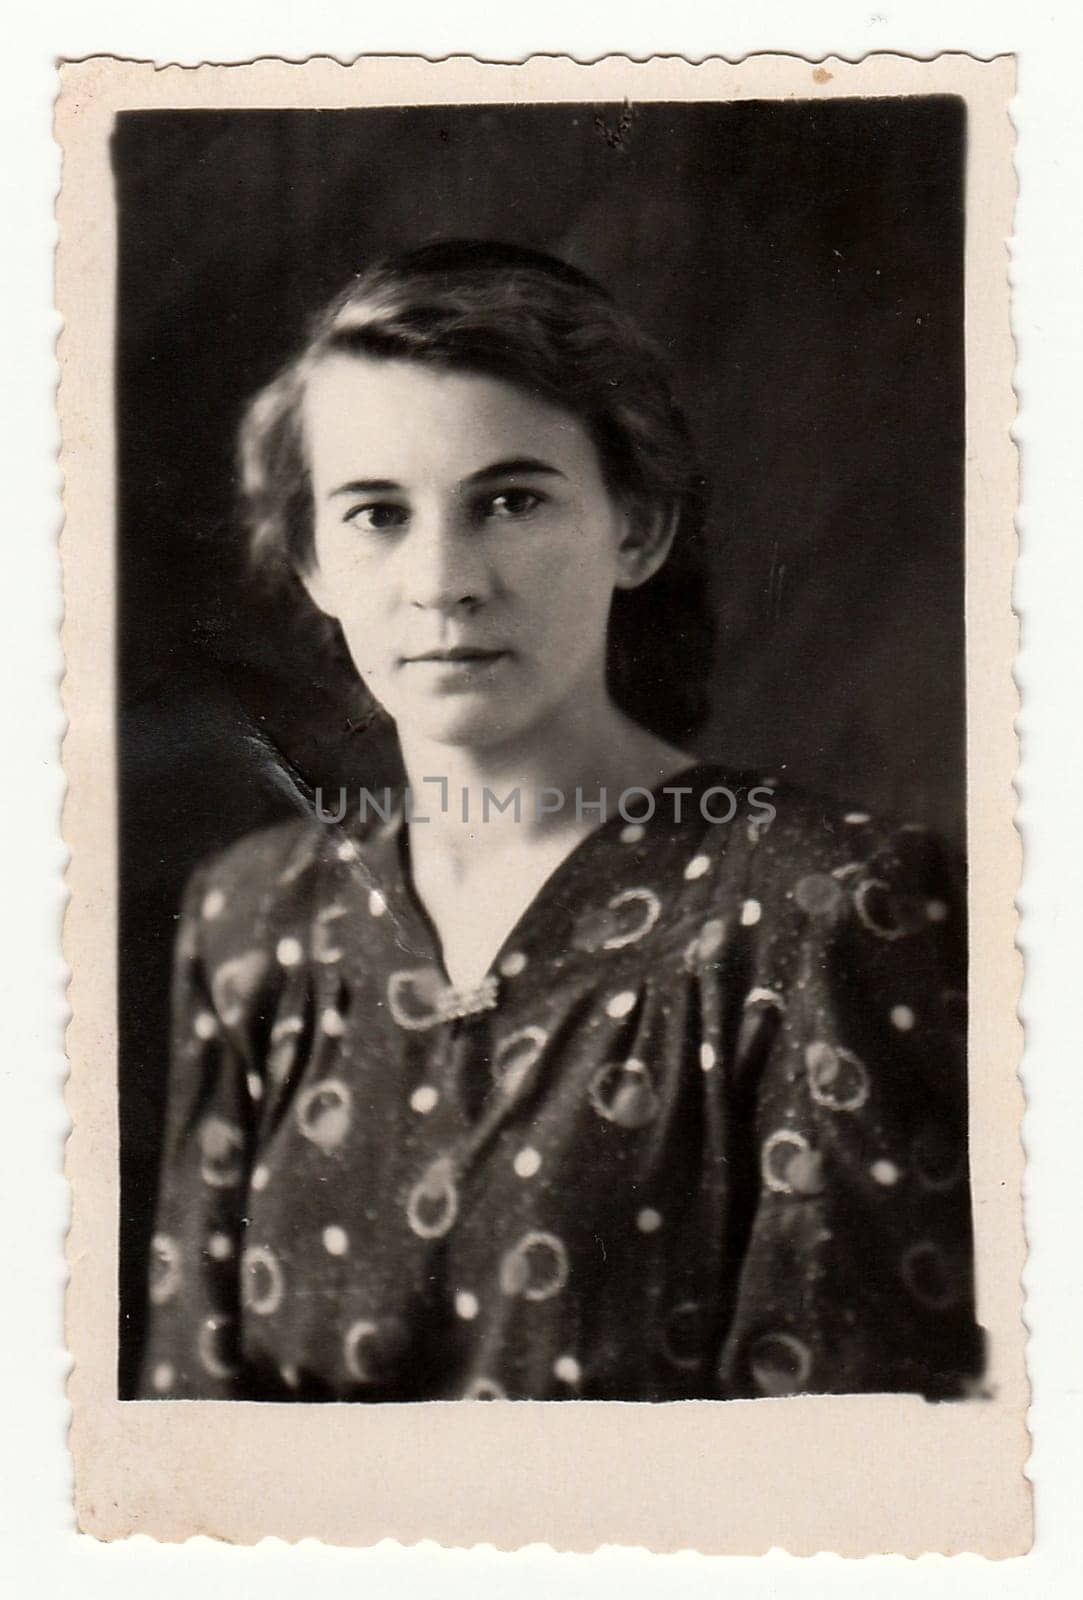 USSR - CIRCA 1960s: Vintage portrait shows a young woman. Black & white antique photo.